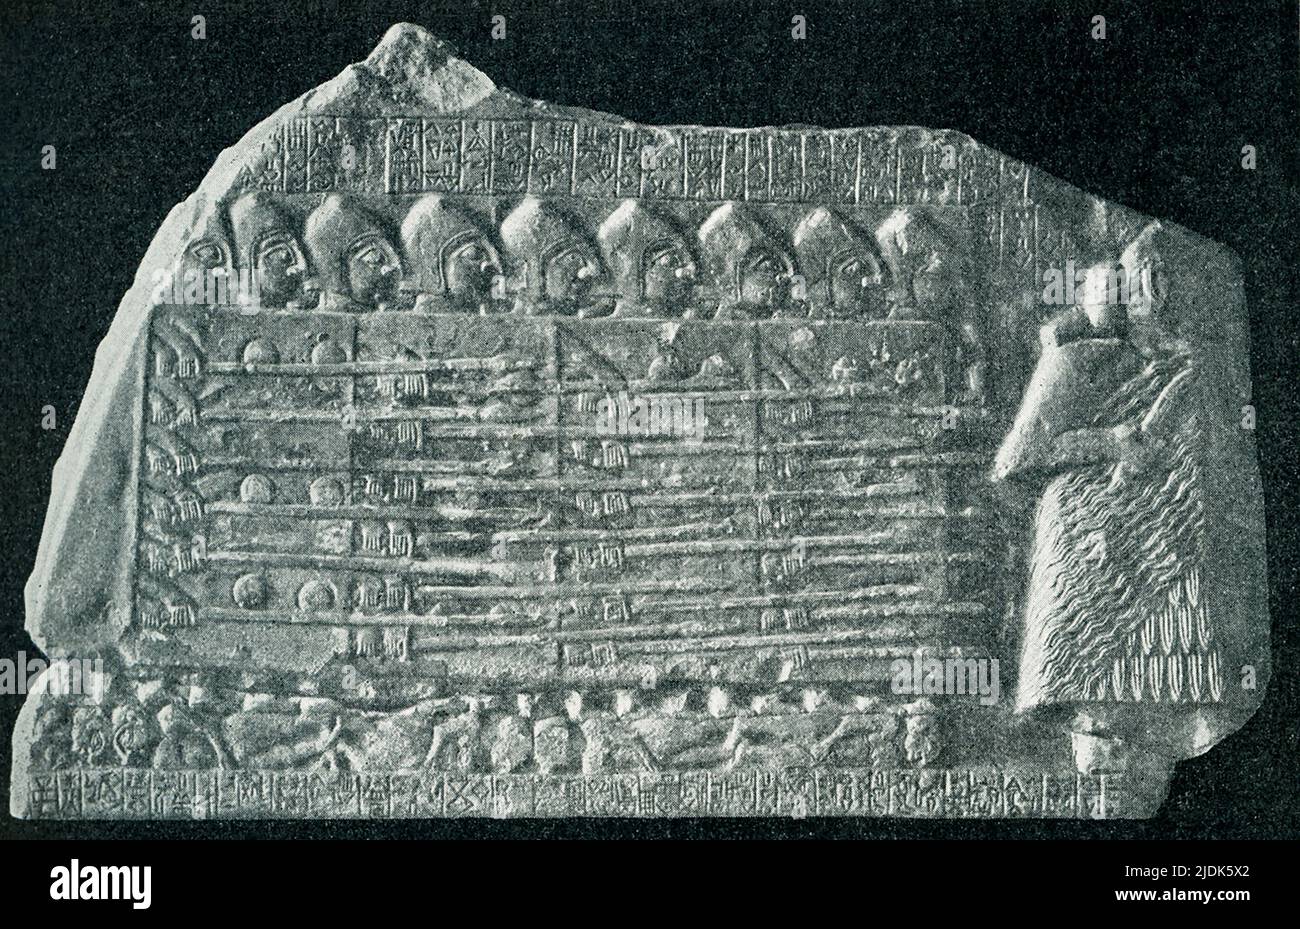 Cette image de 1910 montre la stèle des vautours a été écrit par Lagash comme propagande de guerre, donc lors de l'interprétation de la stèle, il est important de noter qu'elle est unilatérale et intrinsèquement partiale. Les scènes sont sculptées des deux côtés de la stèle, avec des inscriptions remplissant l'espace négatif. Daté entre env. 2600 et 2350 C.-B., c'est une preuve clé dans l'histoire de la guerre. La stèle est originaire de Tello (ancien Girsu) en Irak et date du début de la période dynastique III. La stèle a été érigée pour célébrer la victoire de la cité sumérienne de Lagash, dirigée par Eanatum, sur son rival Umma. Banque D'Images